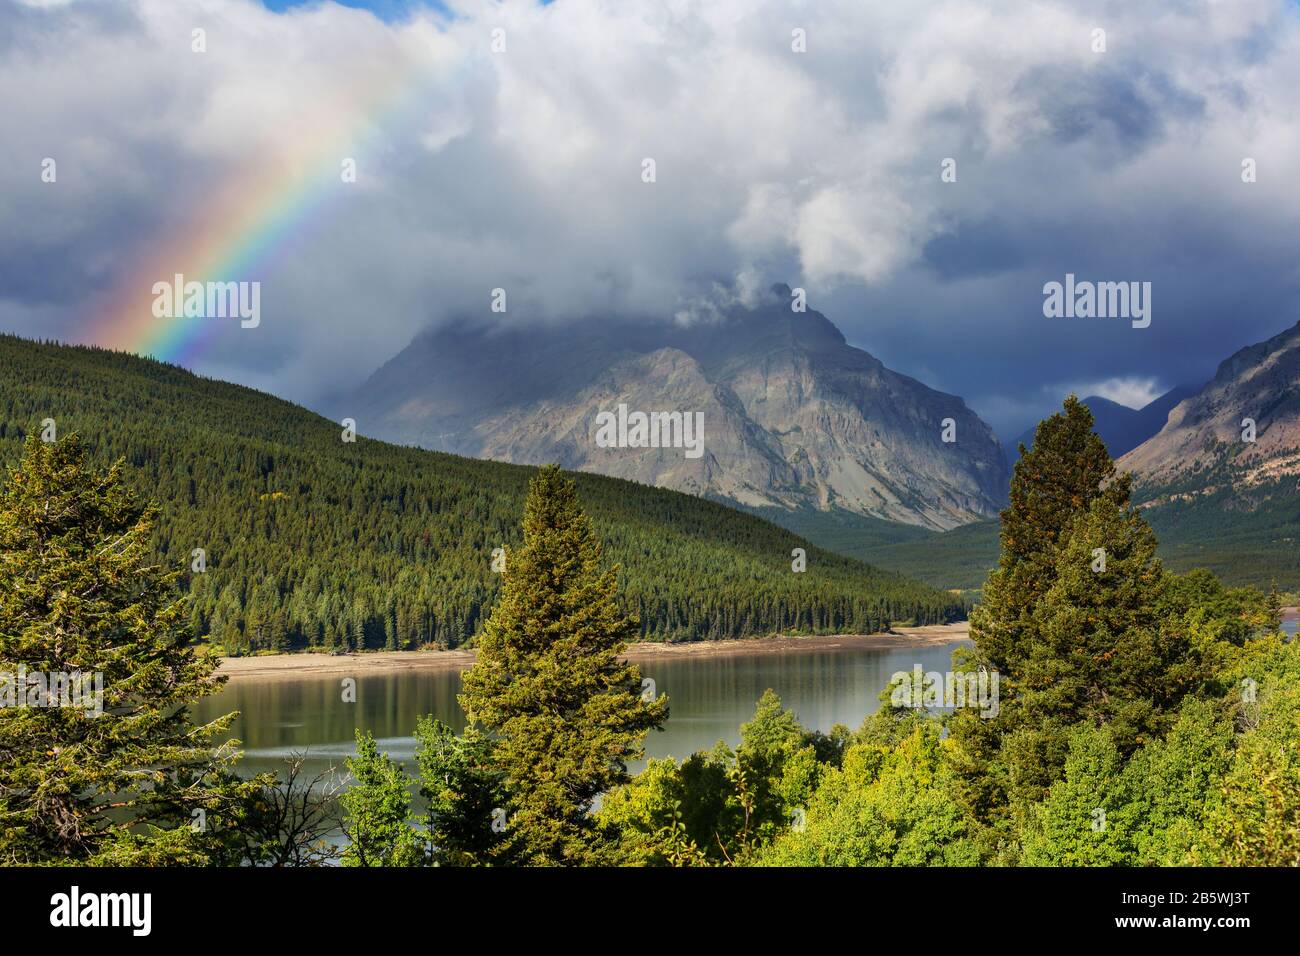 Paisajes naturales fotografías e imágenes de alta resolución - Alamy